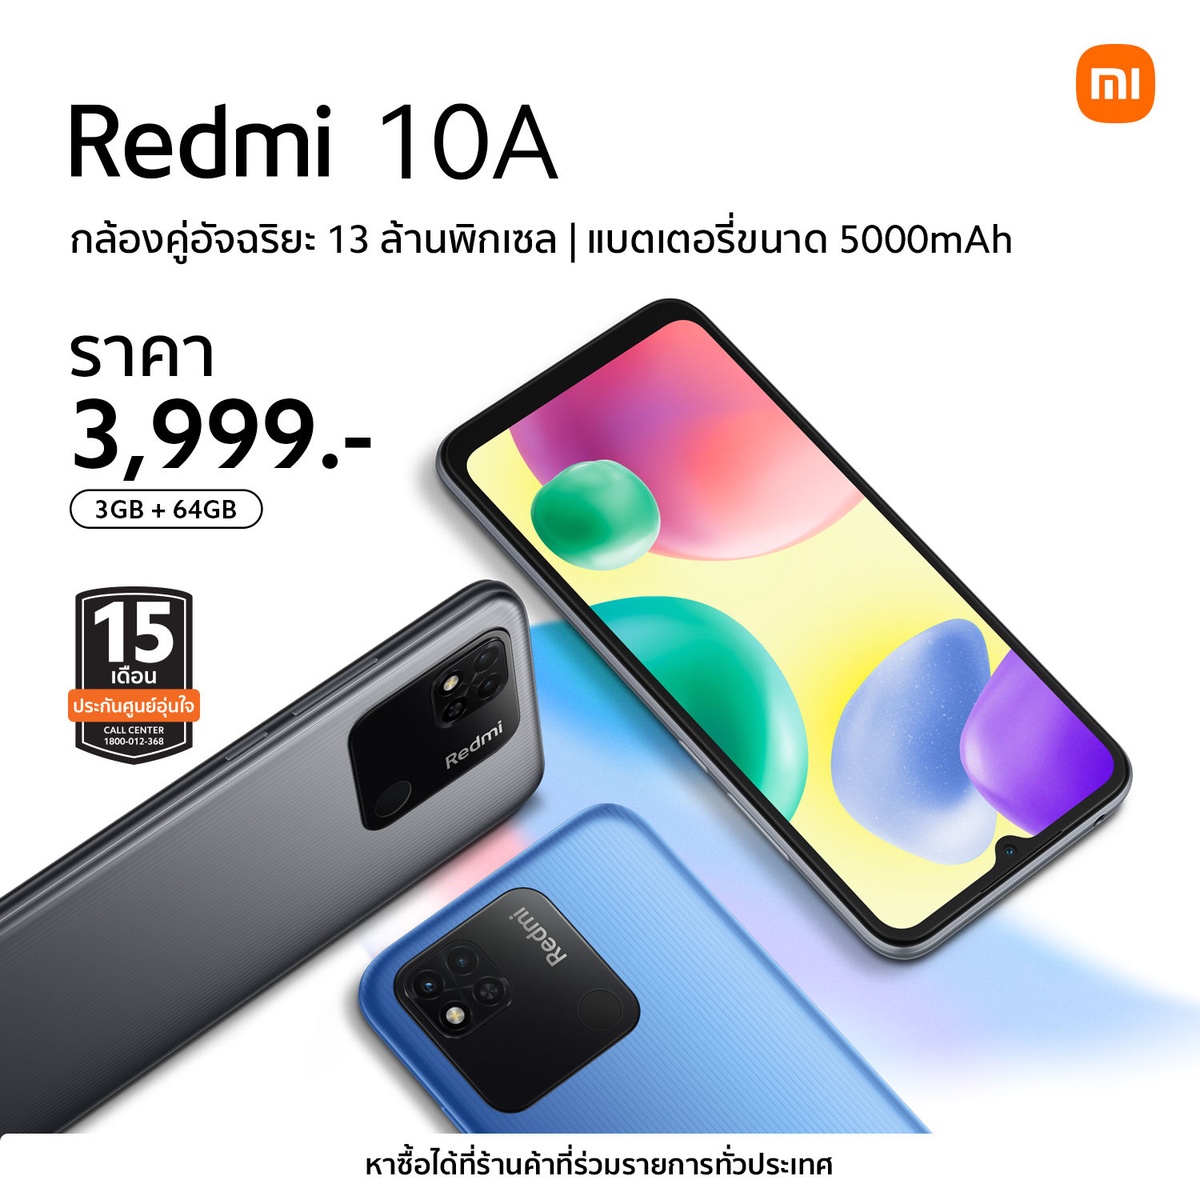 เสียวหมี่ประกาศวางจำหน่าย Redmi 10 2022 และ Redmi 10A สมาร์ทโฟนระดับเริ่มต้น ในราคาเพียง 5,699 บาท และ 3,999 บาท!